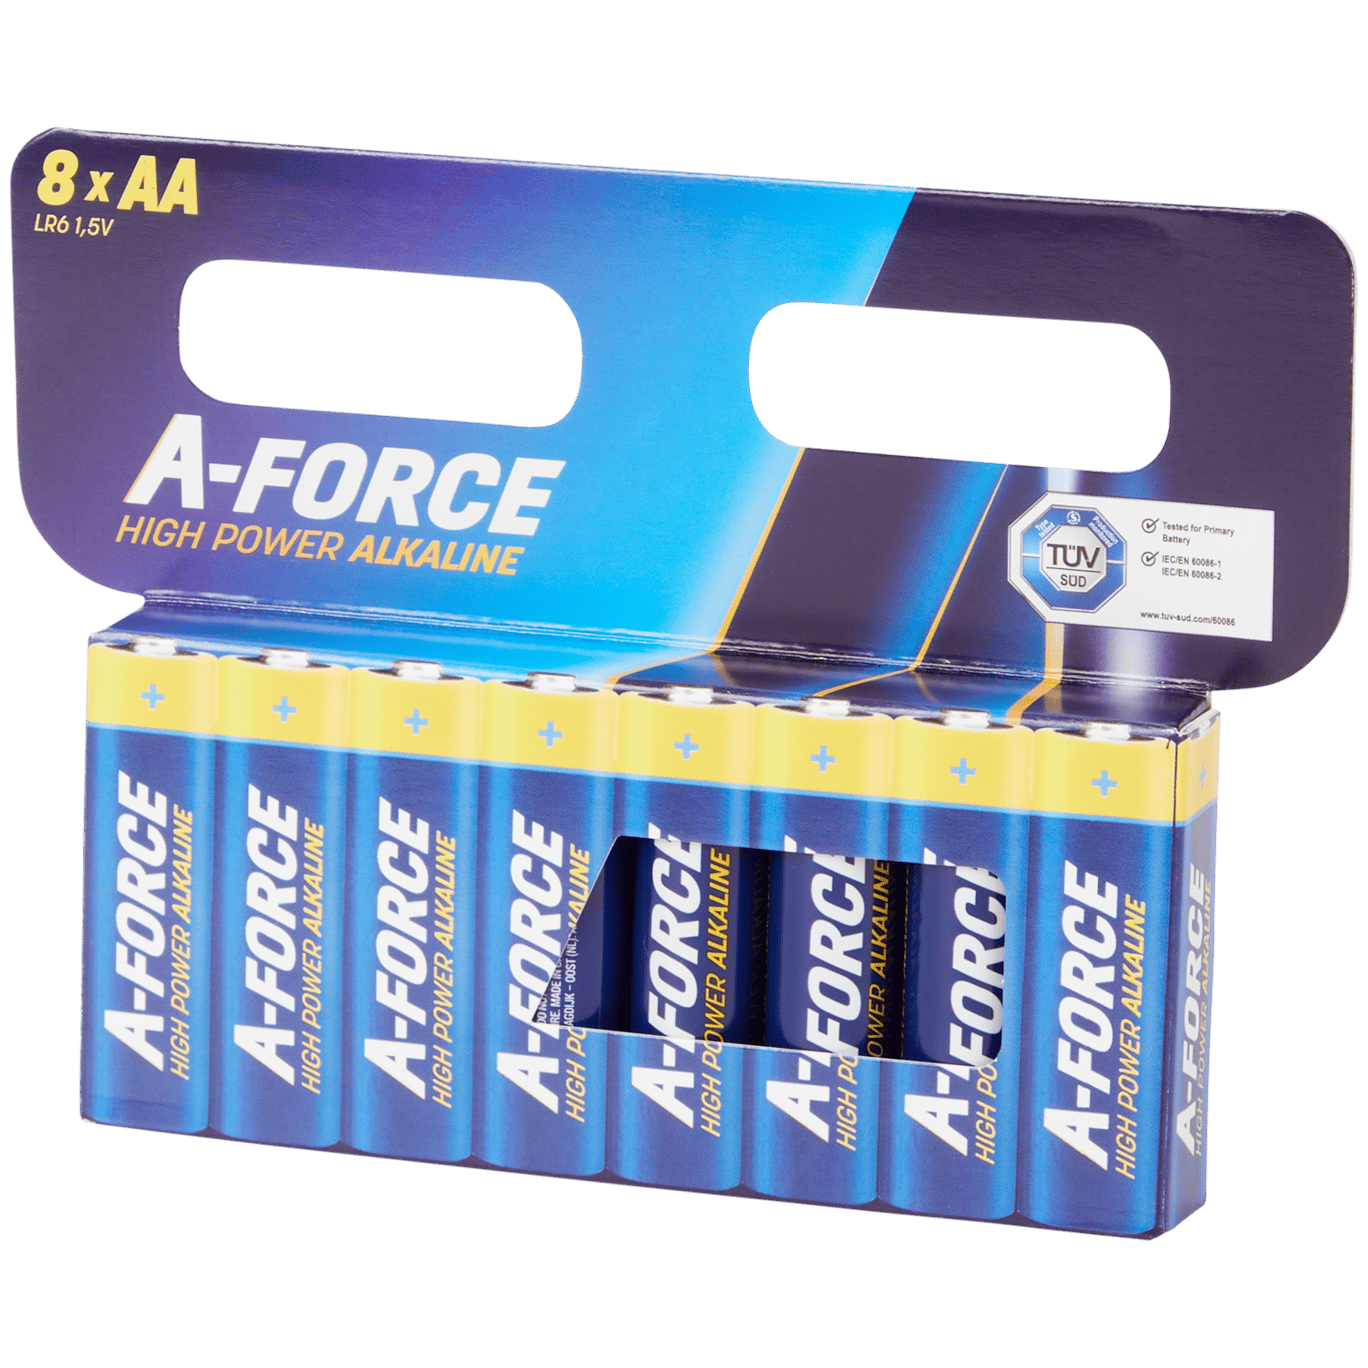 A-Force AAA High Power Alkaline |